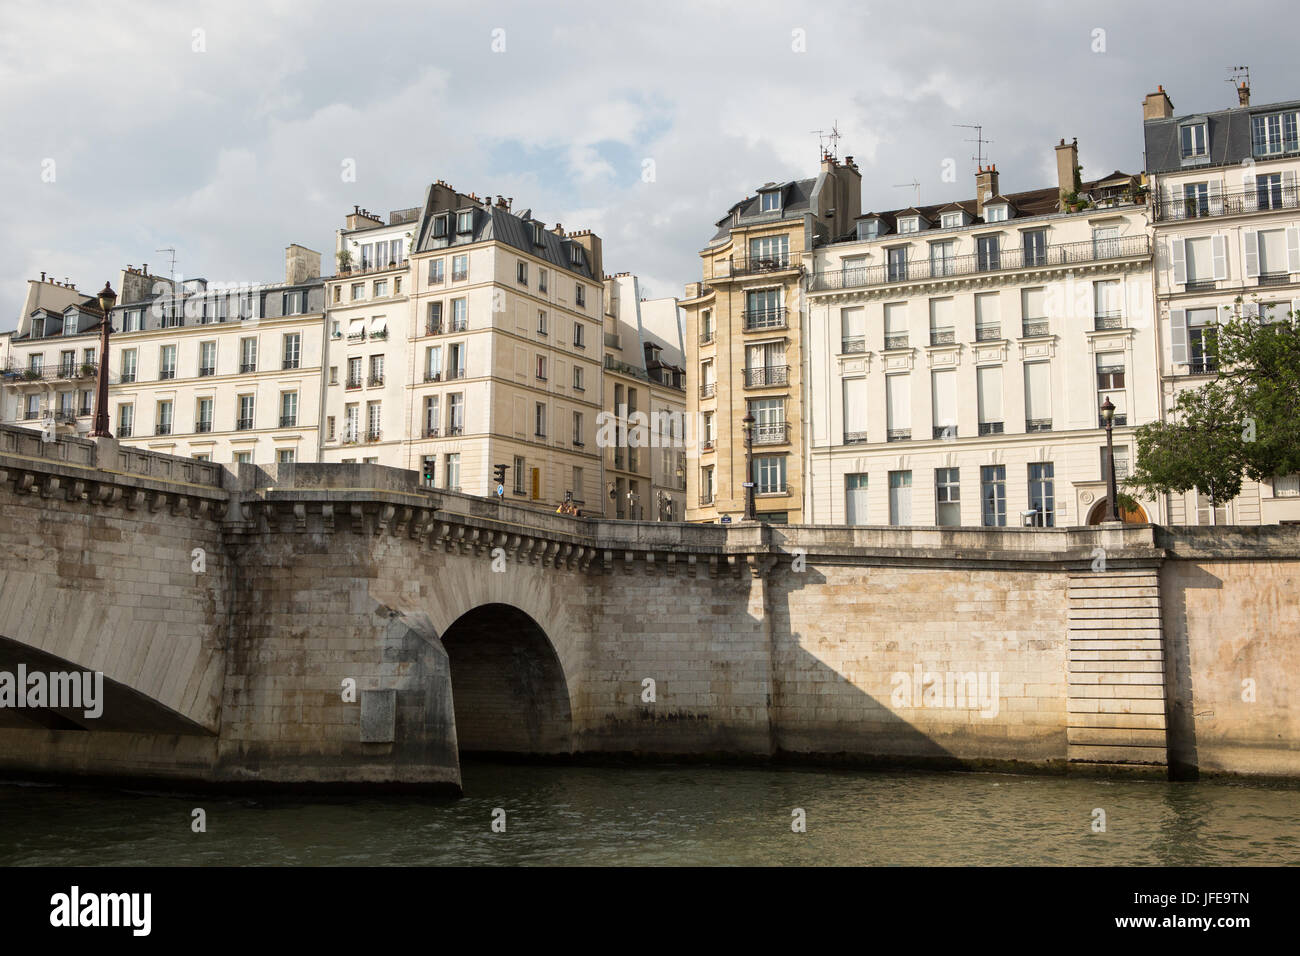 Ein Blick auf die Paris Stadtbild und Architektur vom Seineufer Boot Kreuzfahrt. Stockfoto